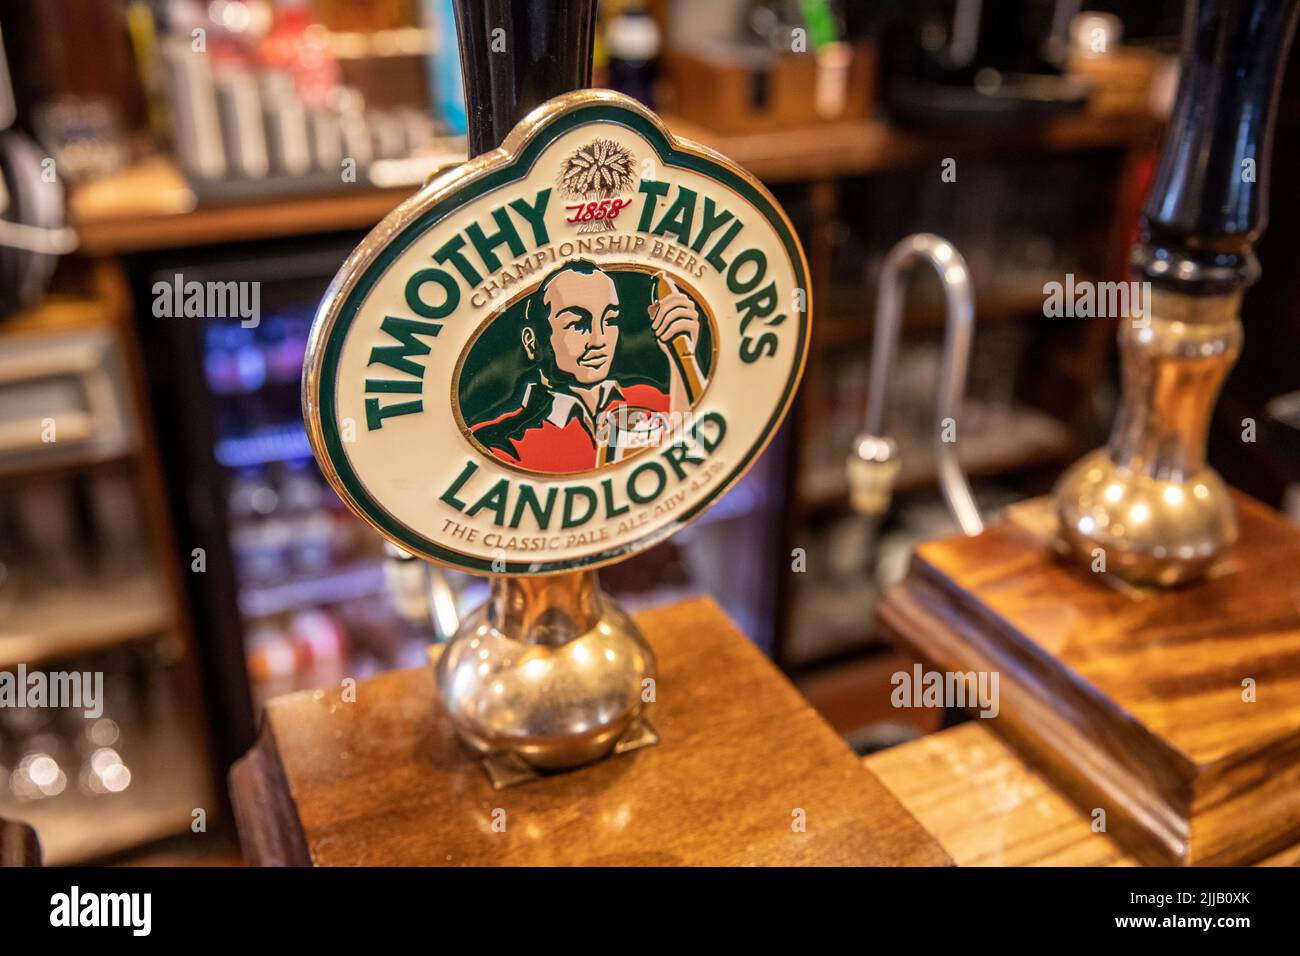 Timothy Taylors Landlord Championship Bier, Handpumpe in einem öffentlichen Haus in Lancashire, England, Großbritannien Stockfoto